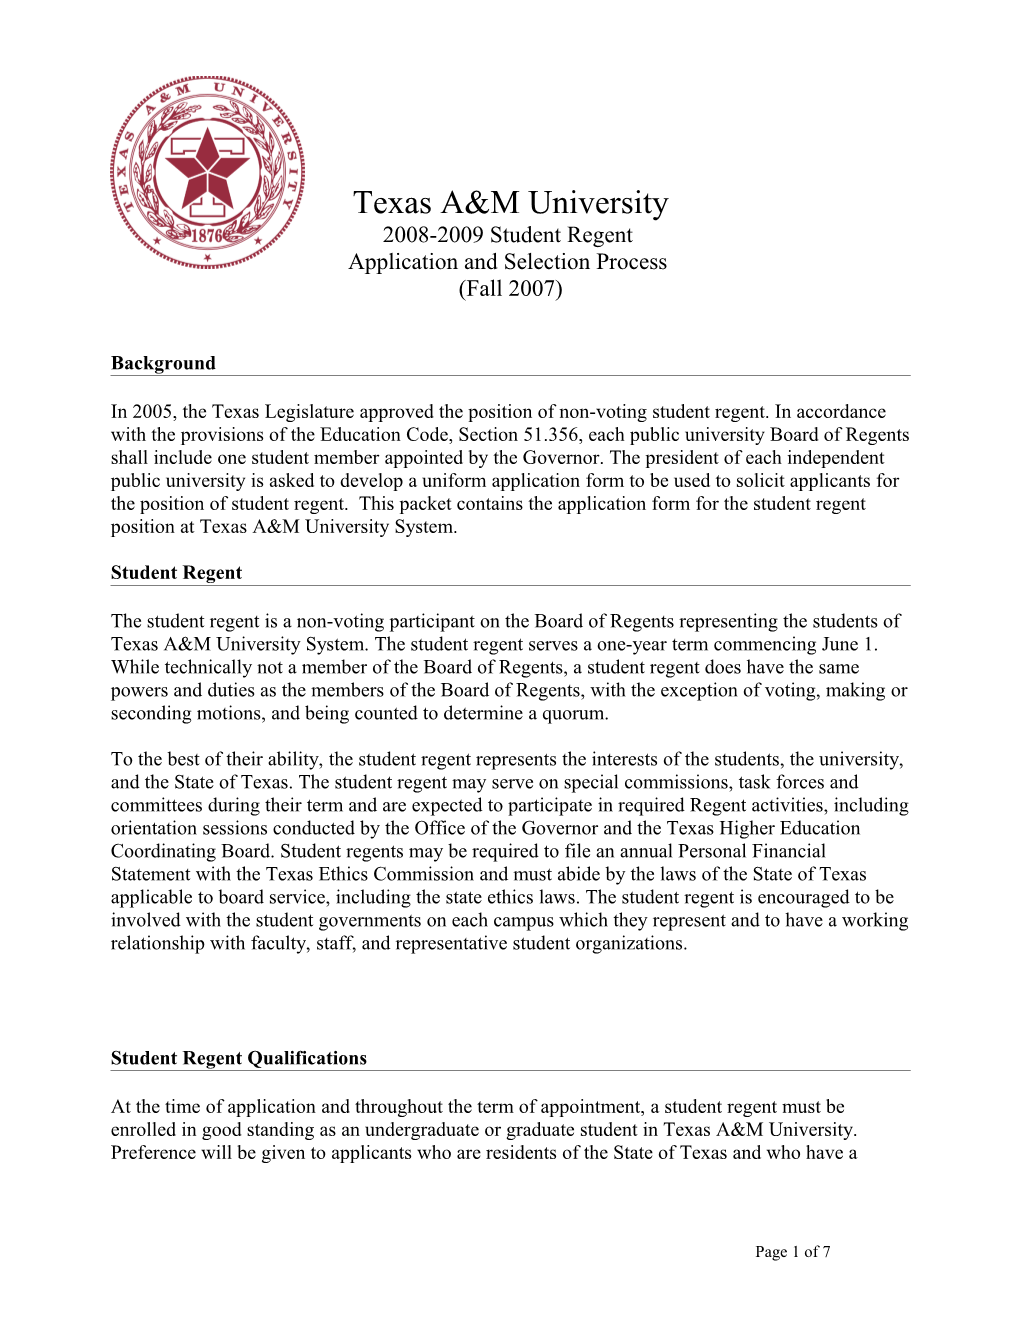 Texas A&M University s3